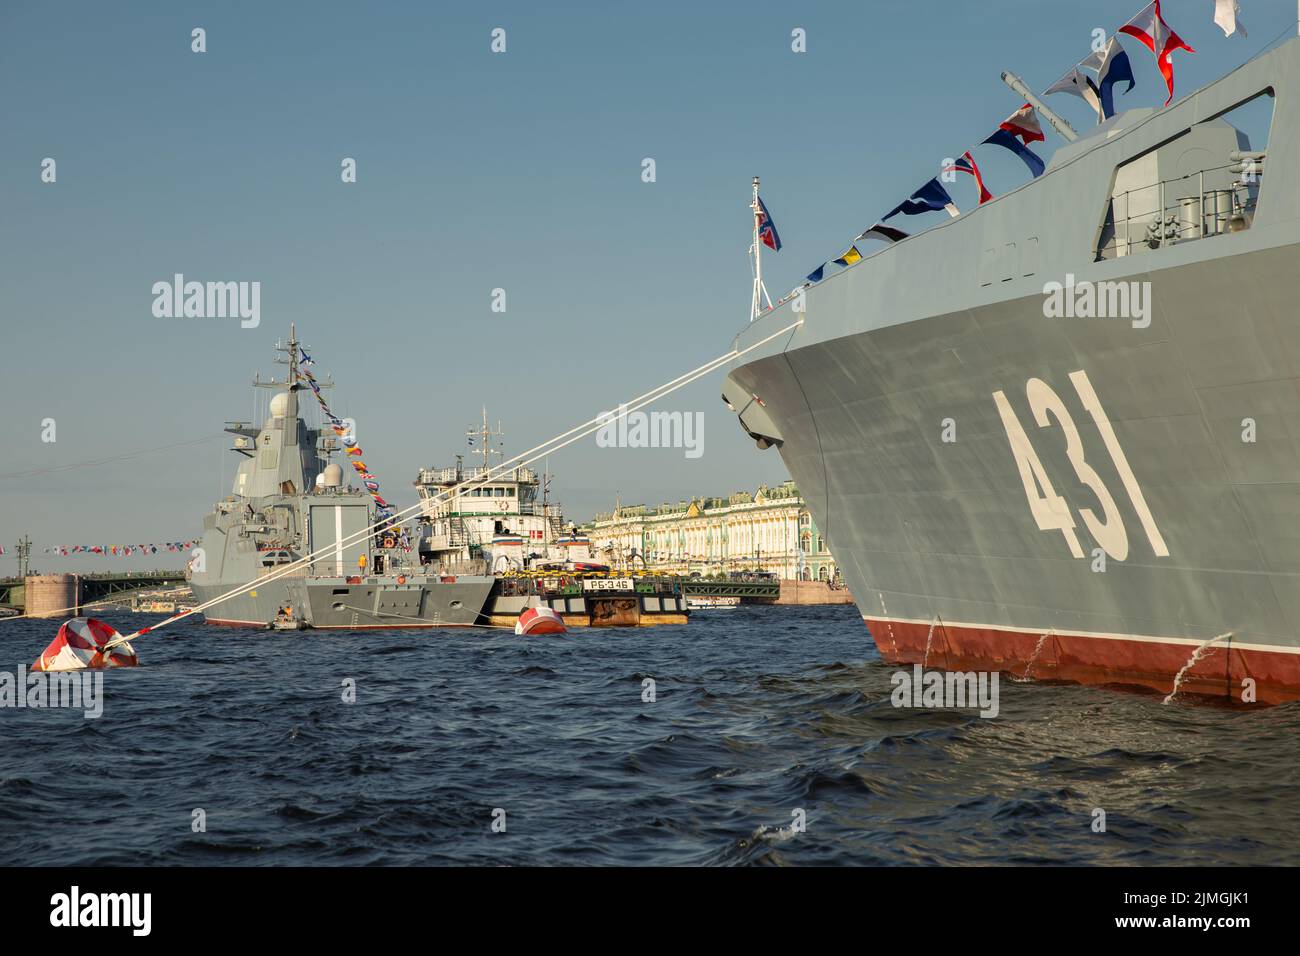 Le paysage avec des navires de guerre dans la rivière Neva avant les vacances de la marine russe à la journée ensoleillée, les derniers croiseurs parmi lan Banque D'Images